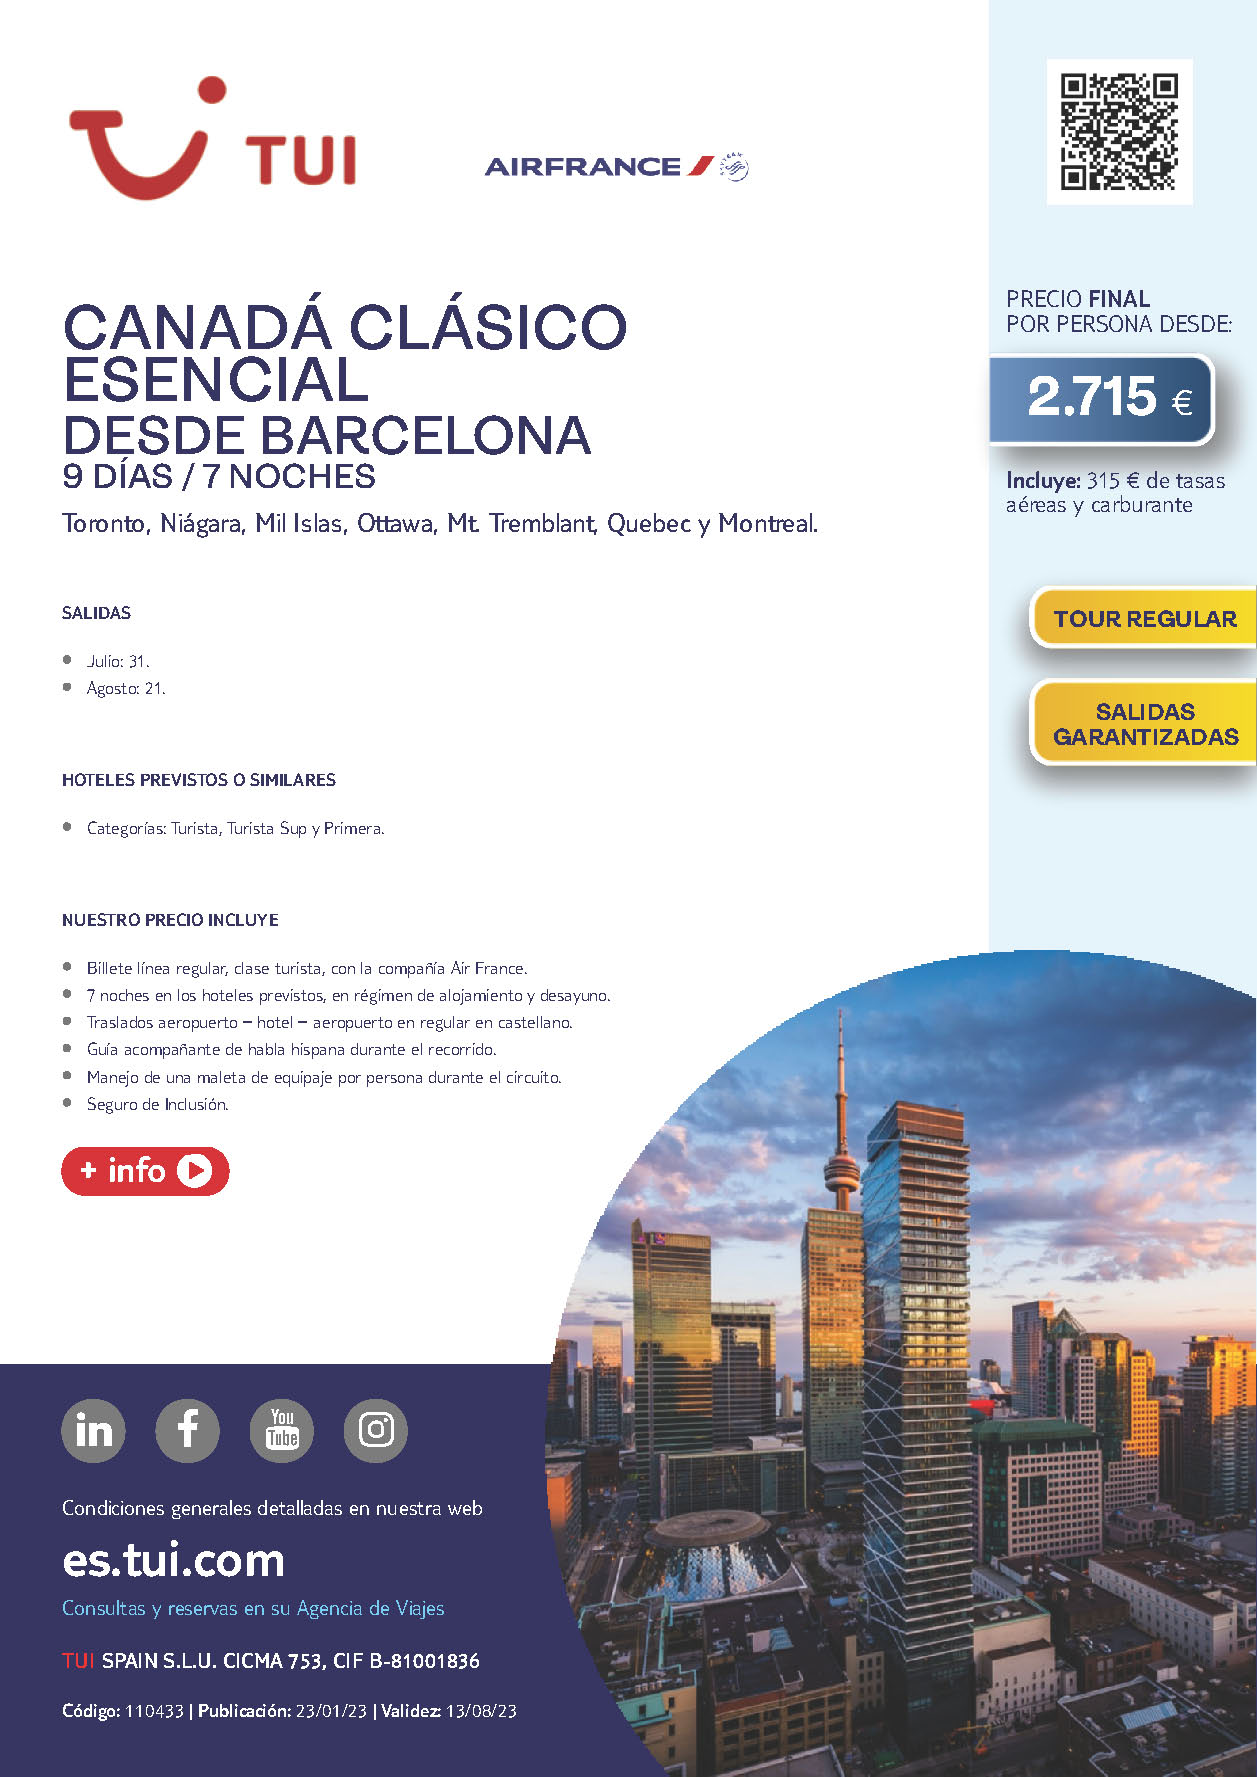 Oferta TUI Canada Clasico Esencial 9 dias salidas Julio y Agosto 2023 desde Barcelona vuelos Air France